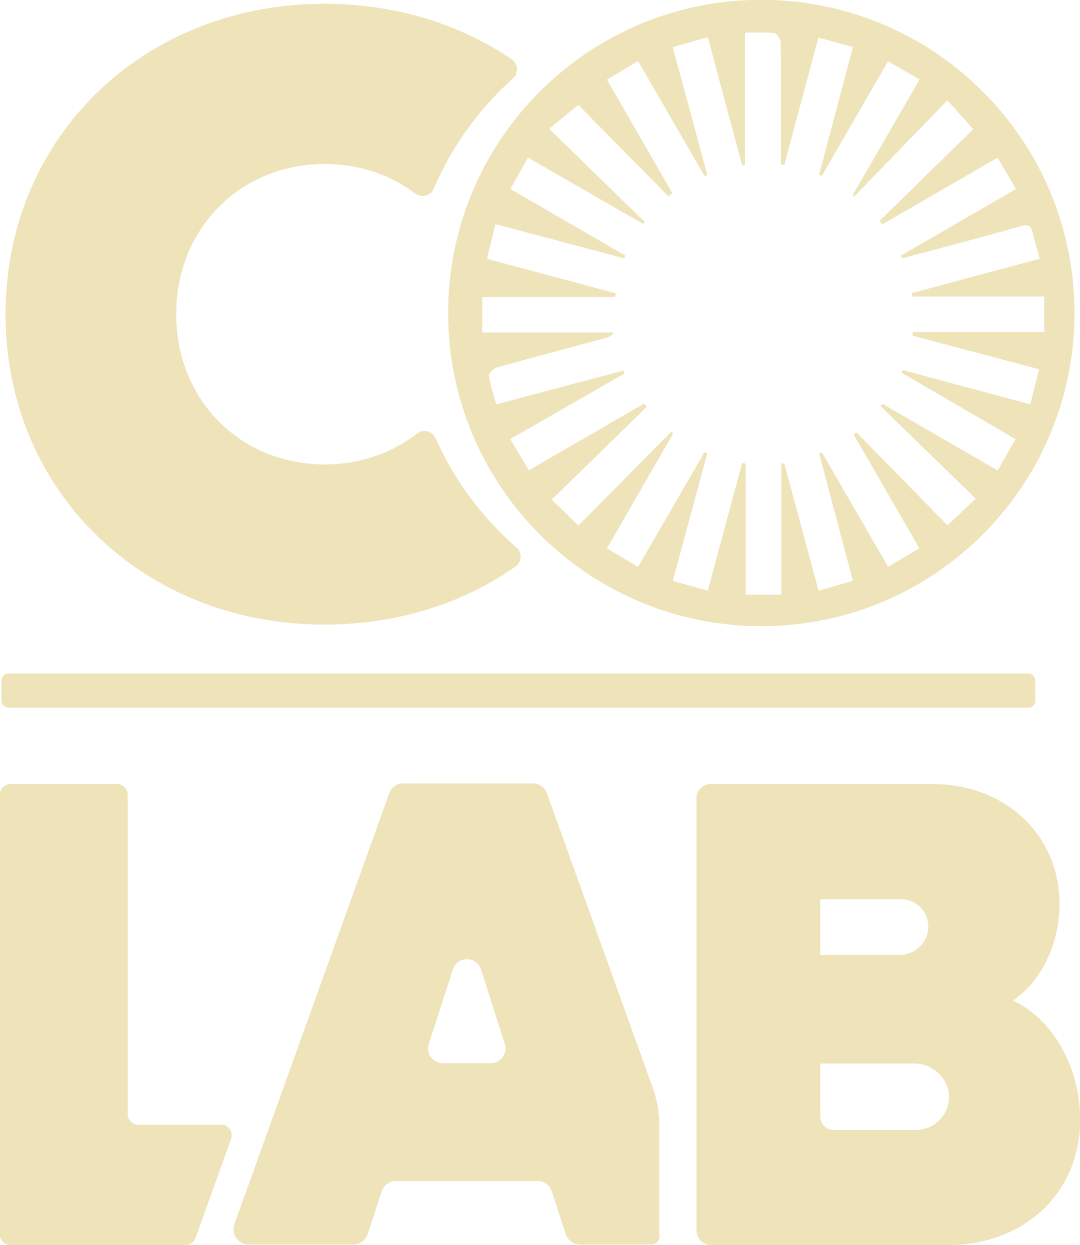 CoLab Consulting